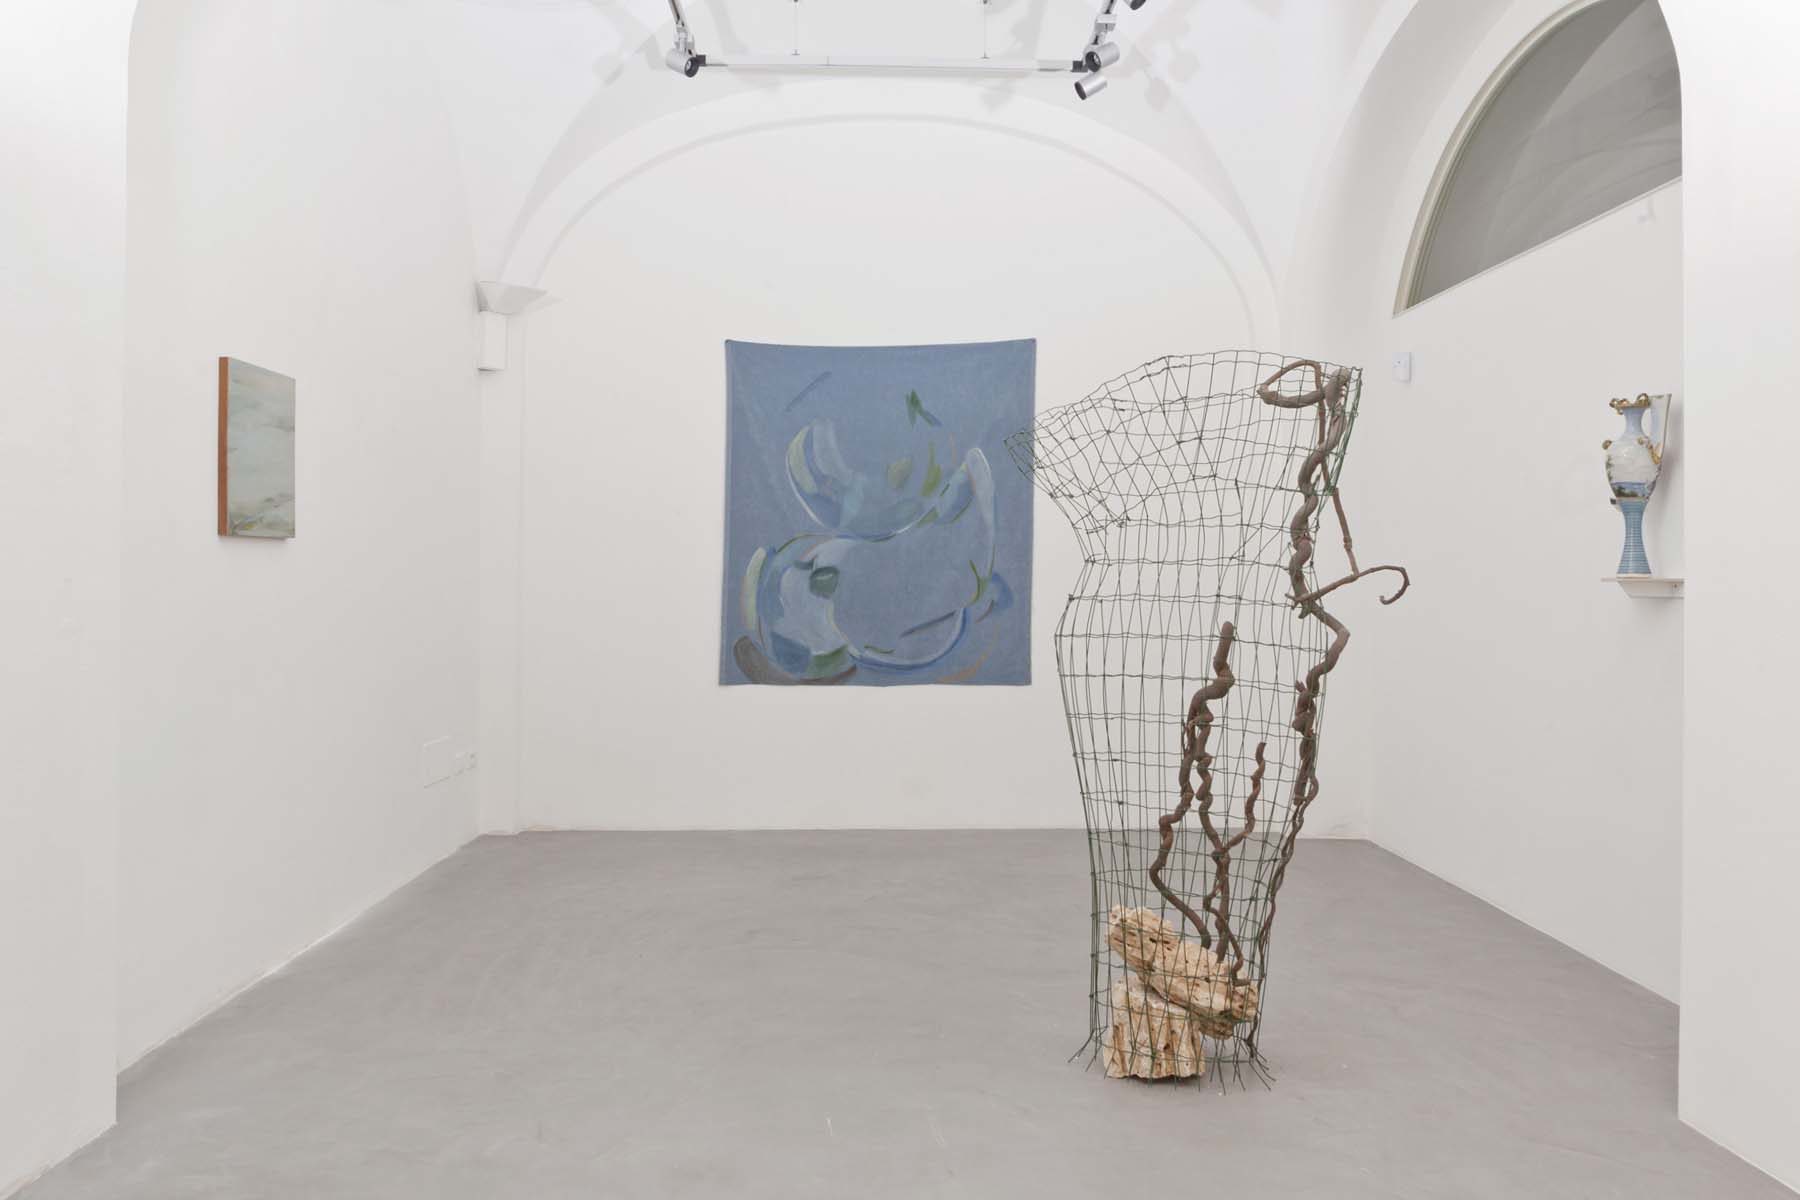 Slittamenti e Margini, 2018, exhibition view, Passaggi Arte Contemporanea, Pisa, ph. N. Belluzzi